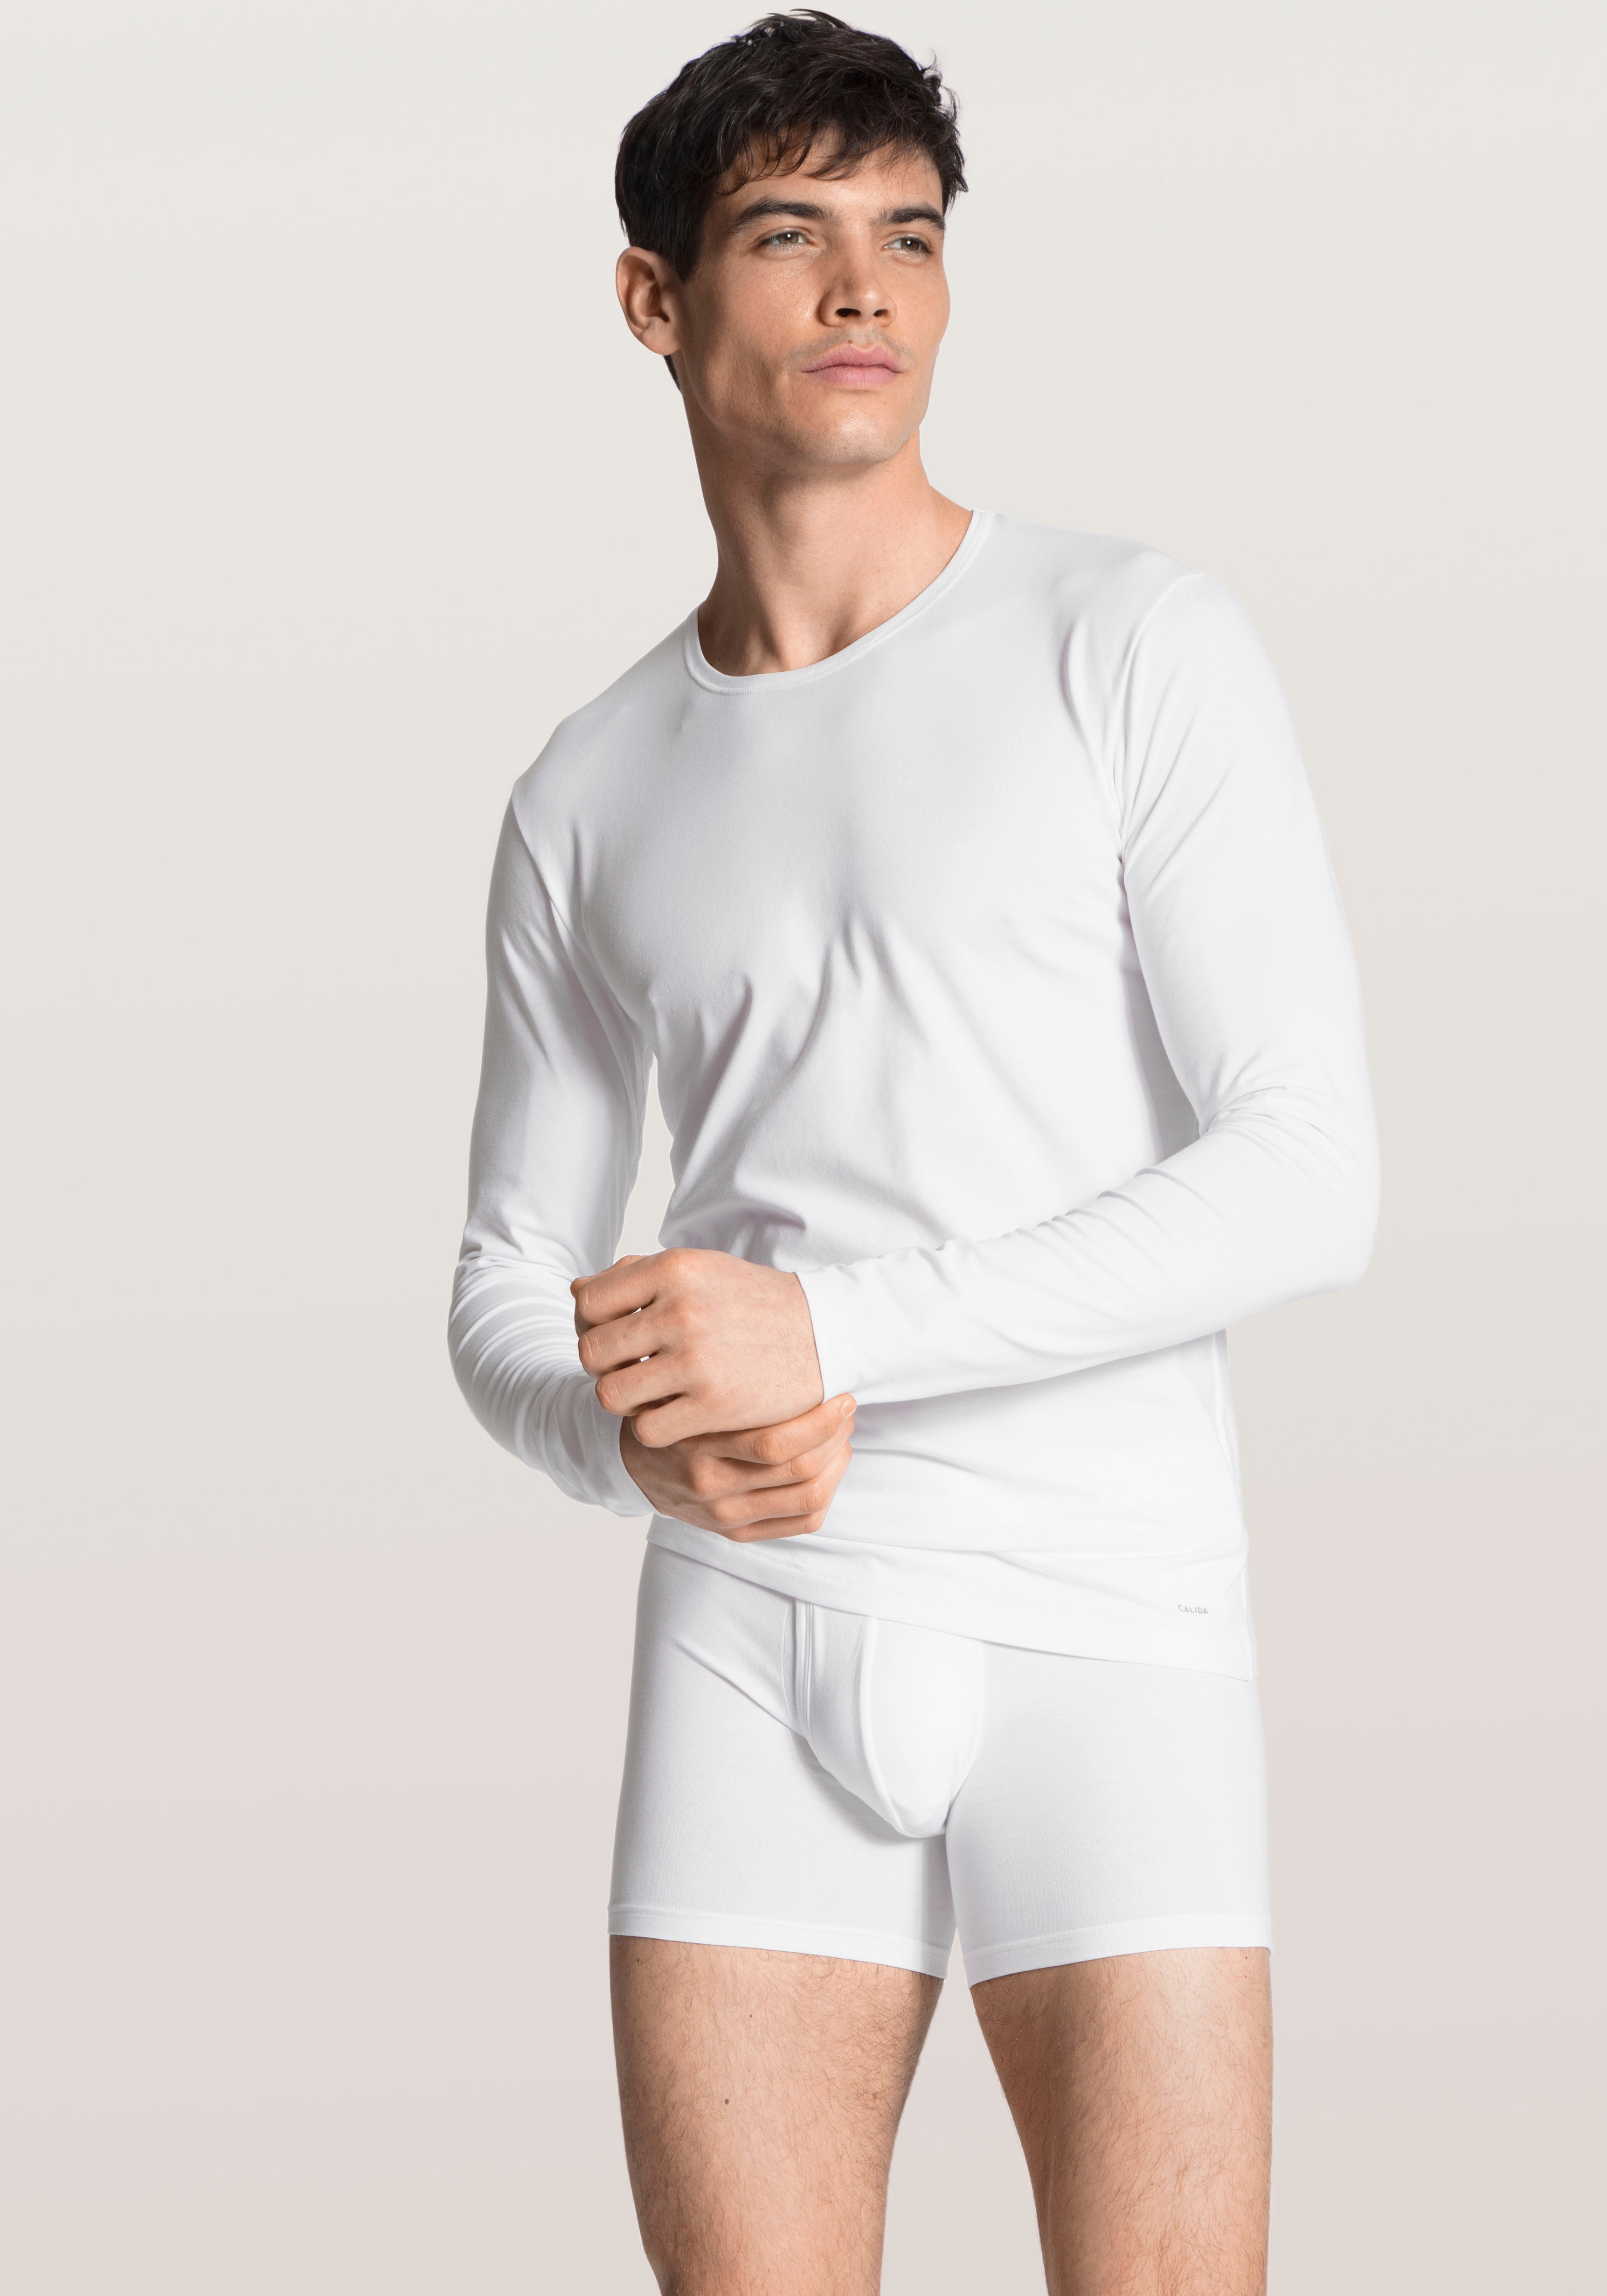 Calida Herren Cotton Code T-Shirt, Weiß (Weiß 001), Large (Herstellergröße:L)